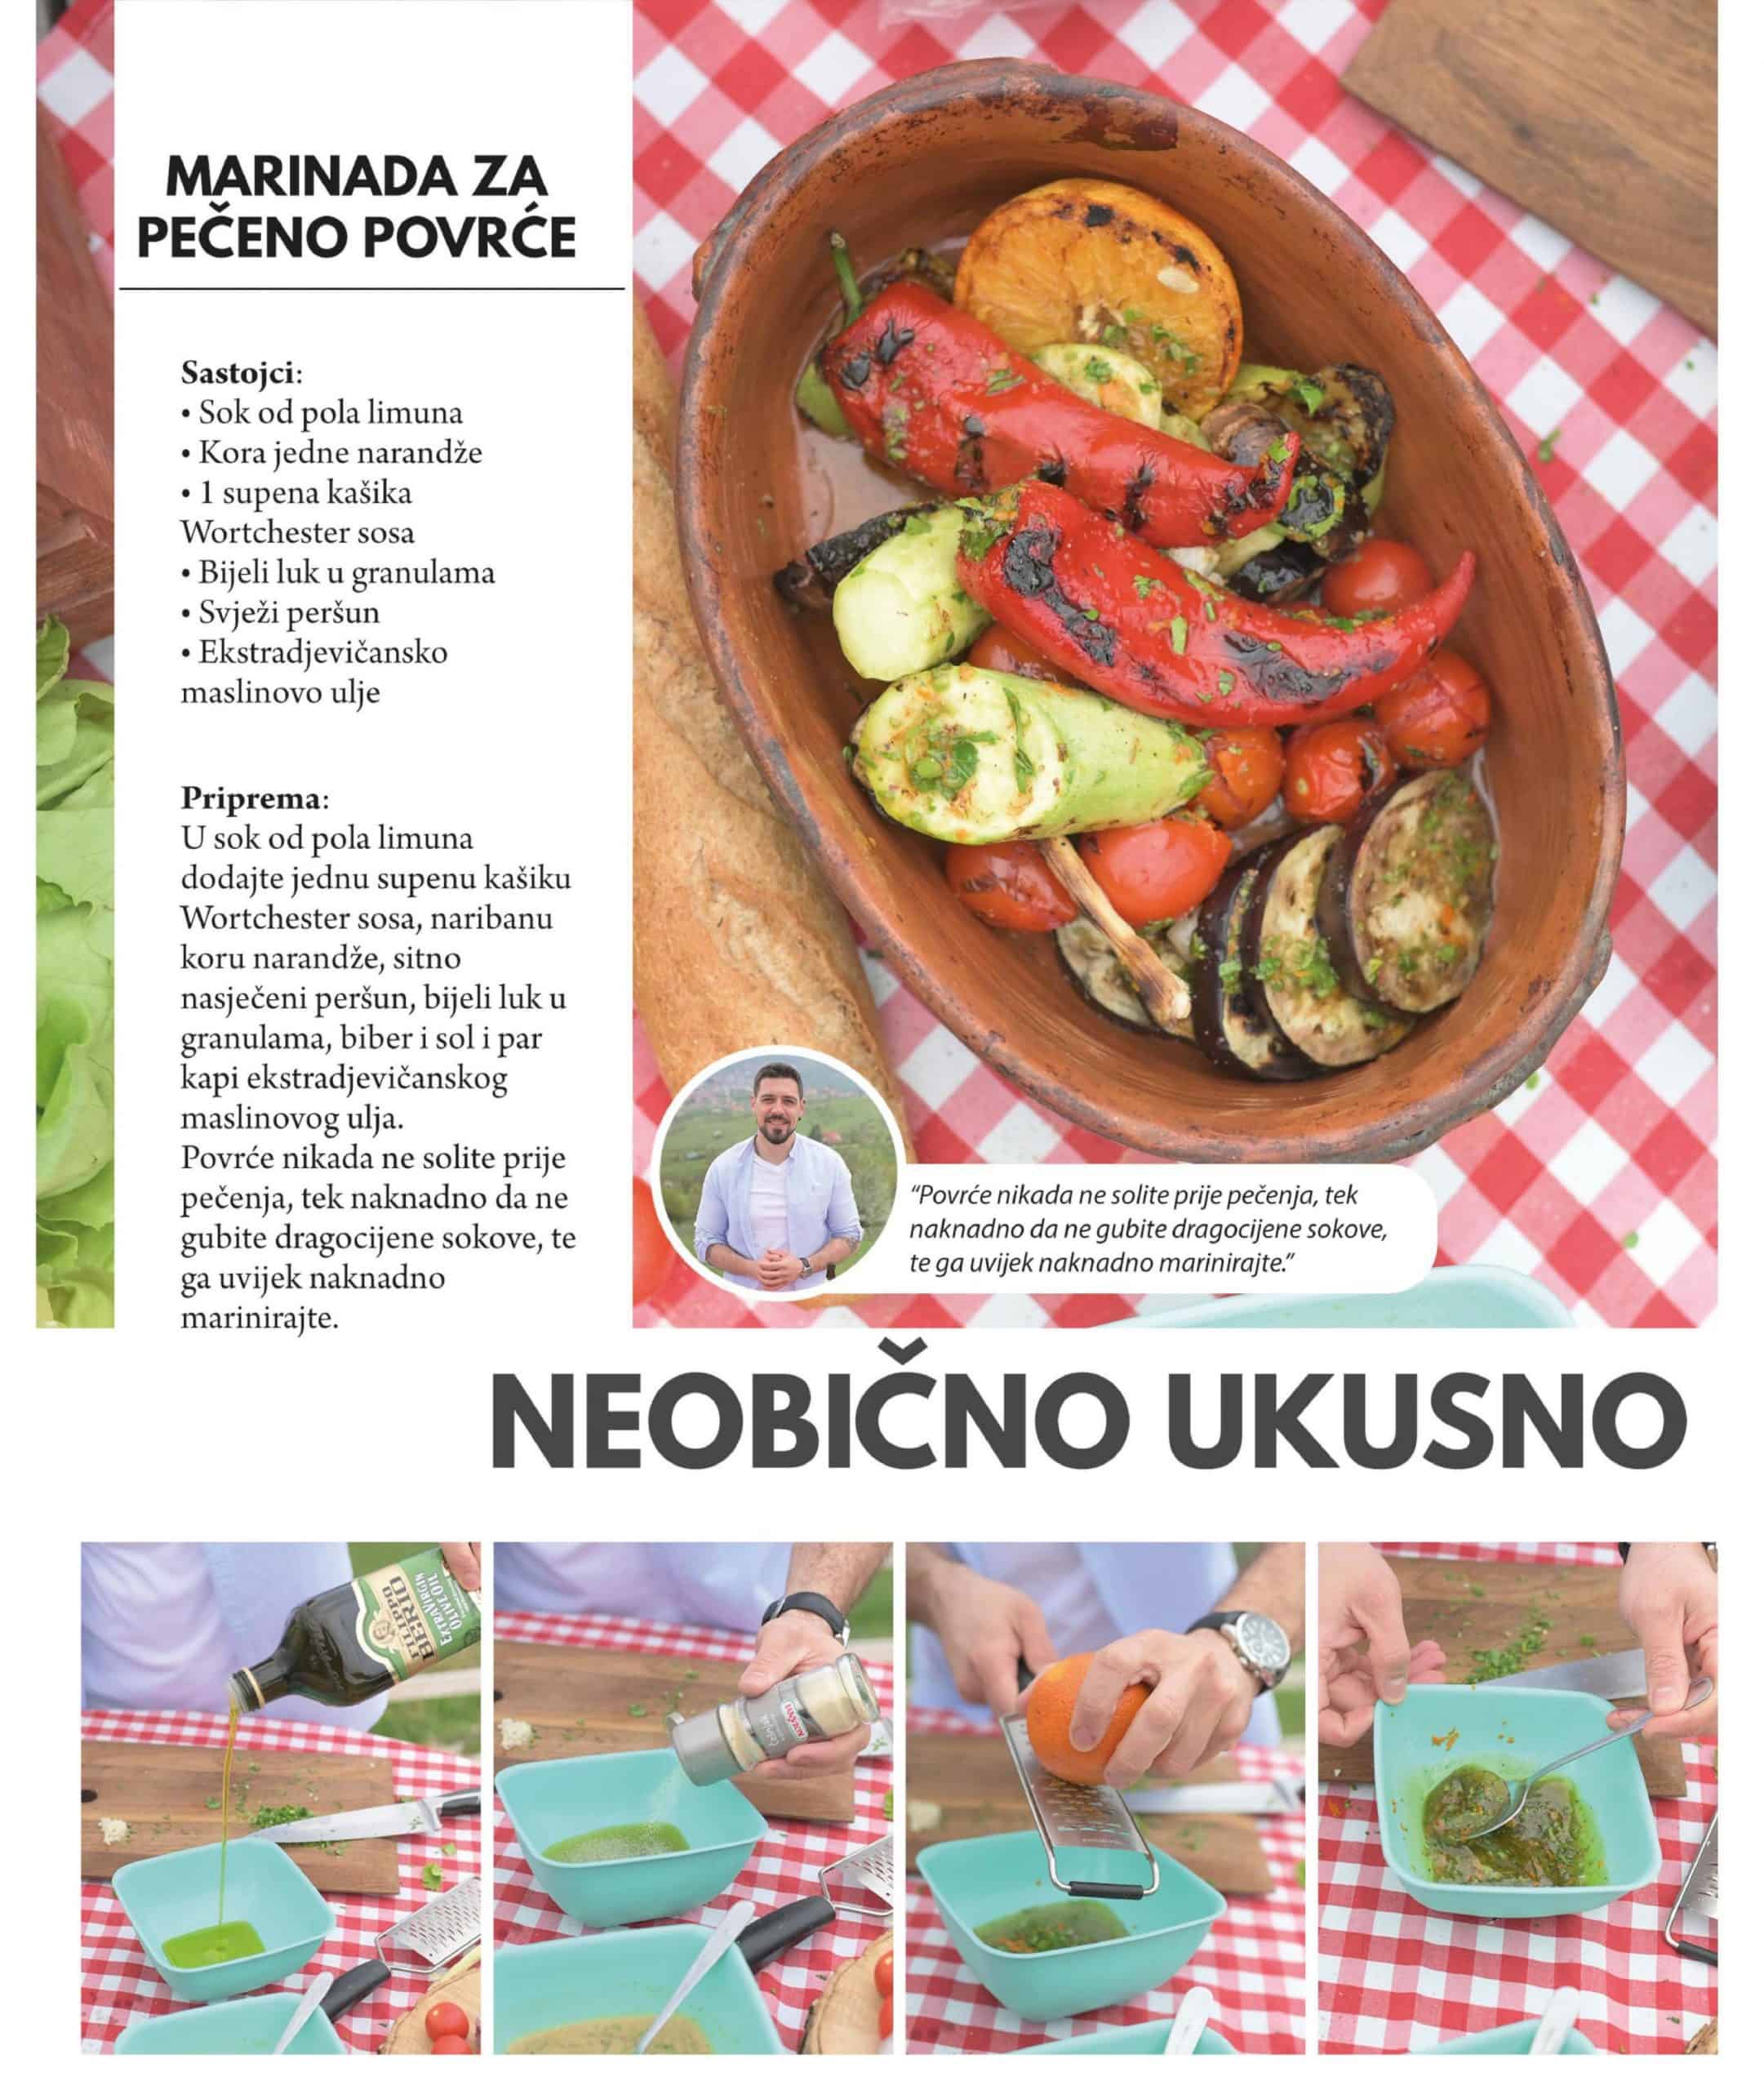 Bingo katalog Magazin Plus donosi nam odličnu ponudu prehrambenih proizvoda! Pronaci cete mnoosto dobrih recepata za ukusna jela!